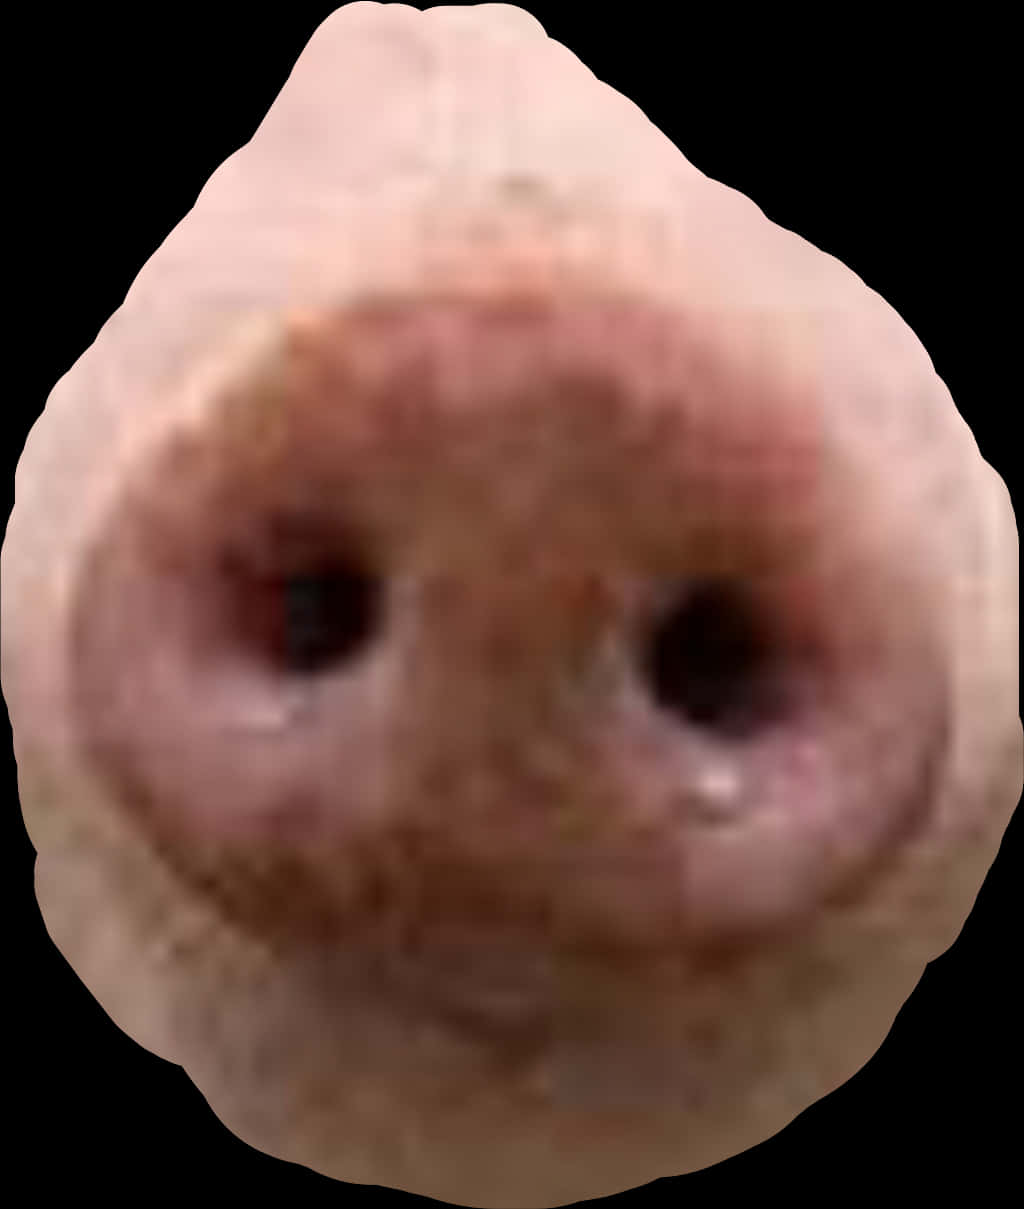 A Close Up Of A Pig's Nose